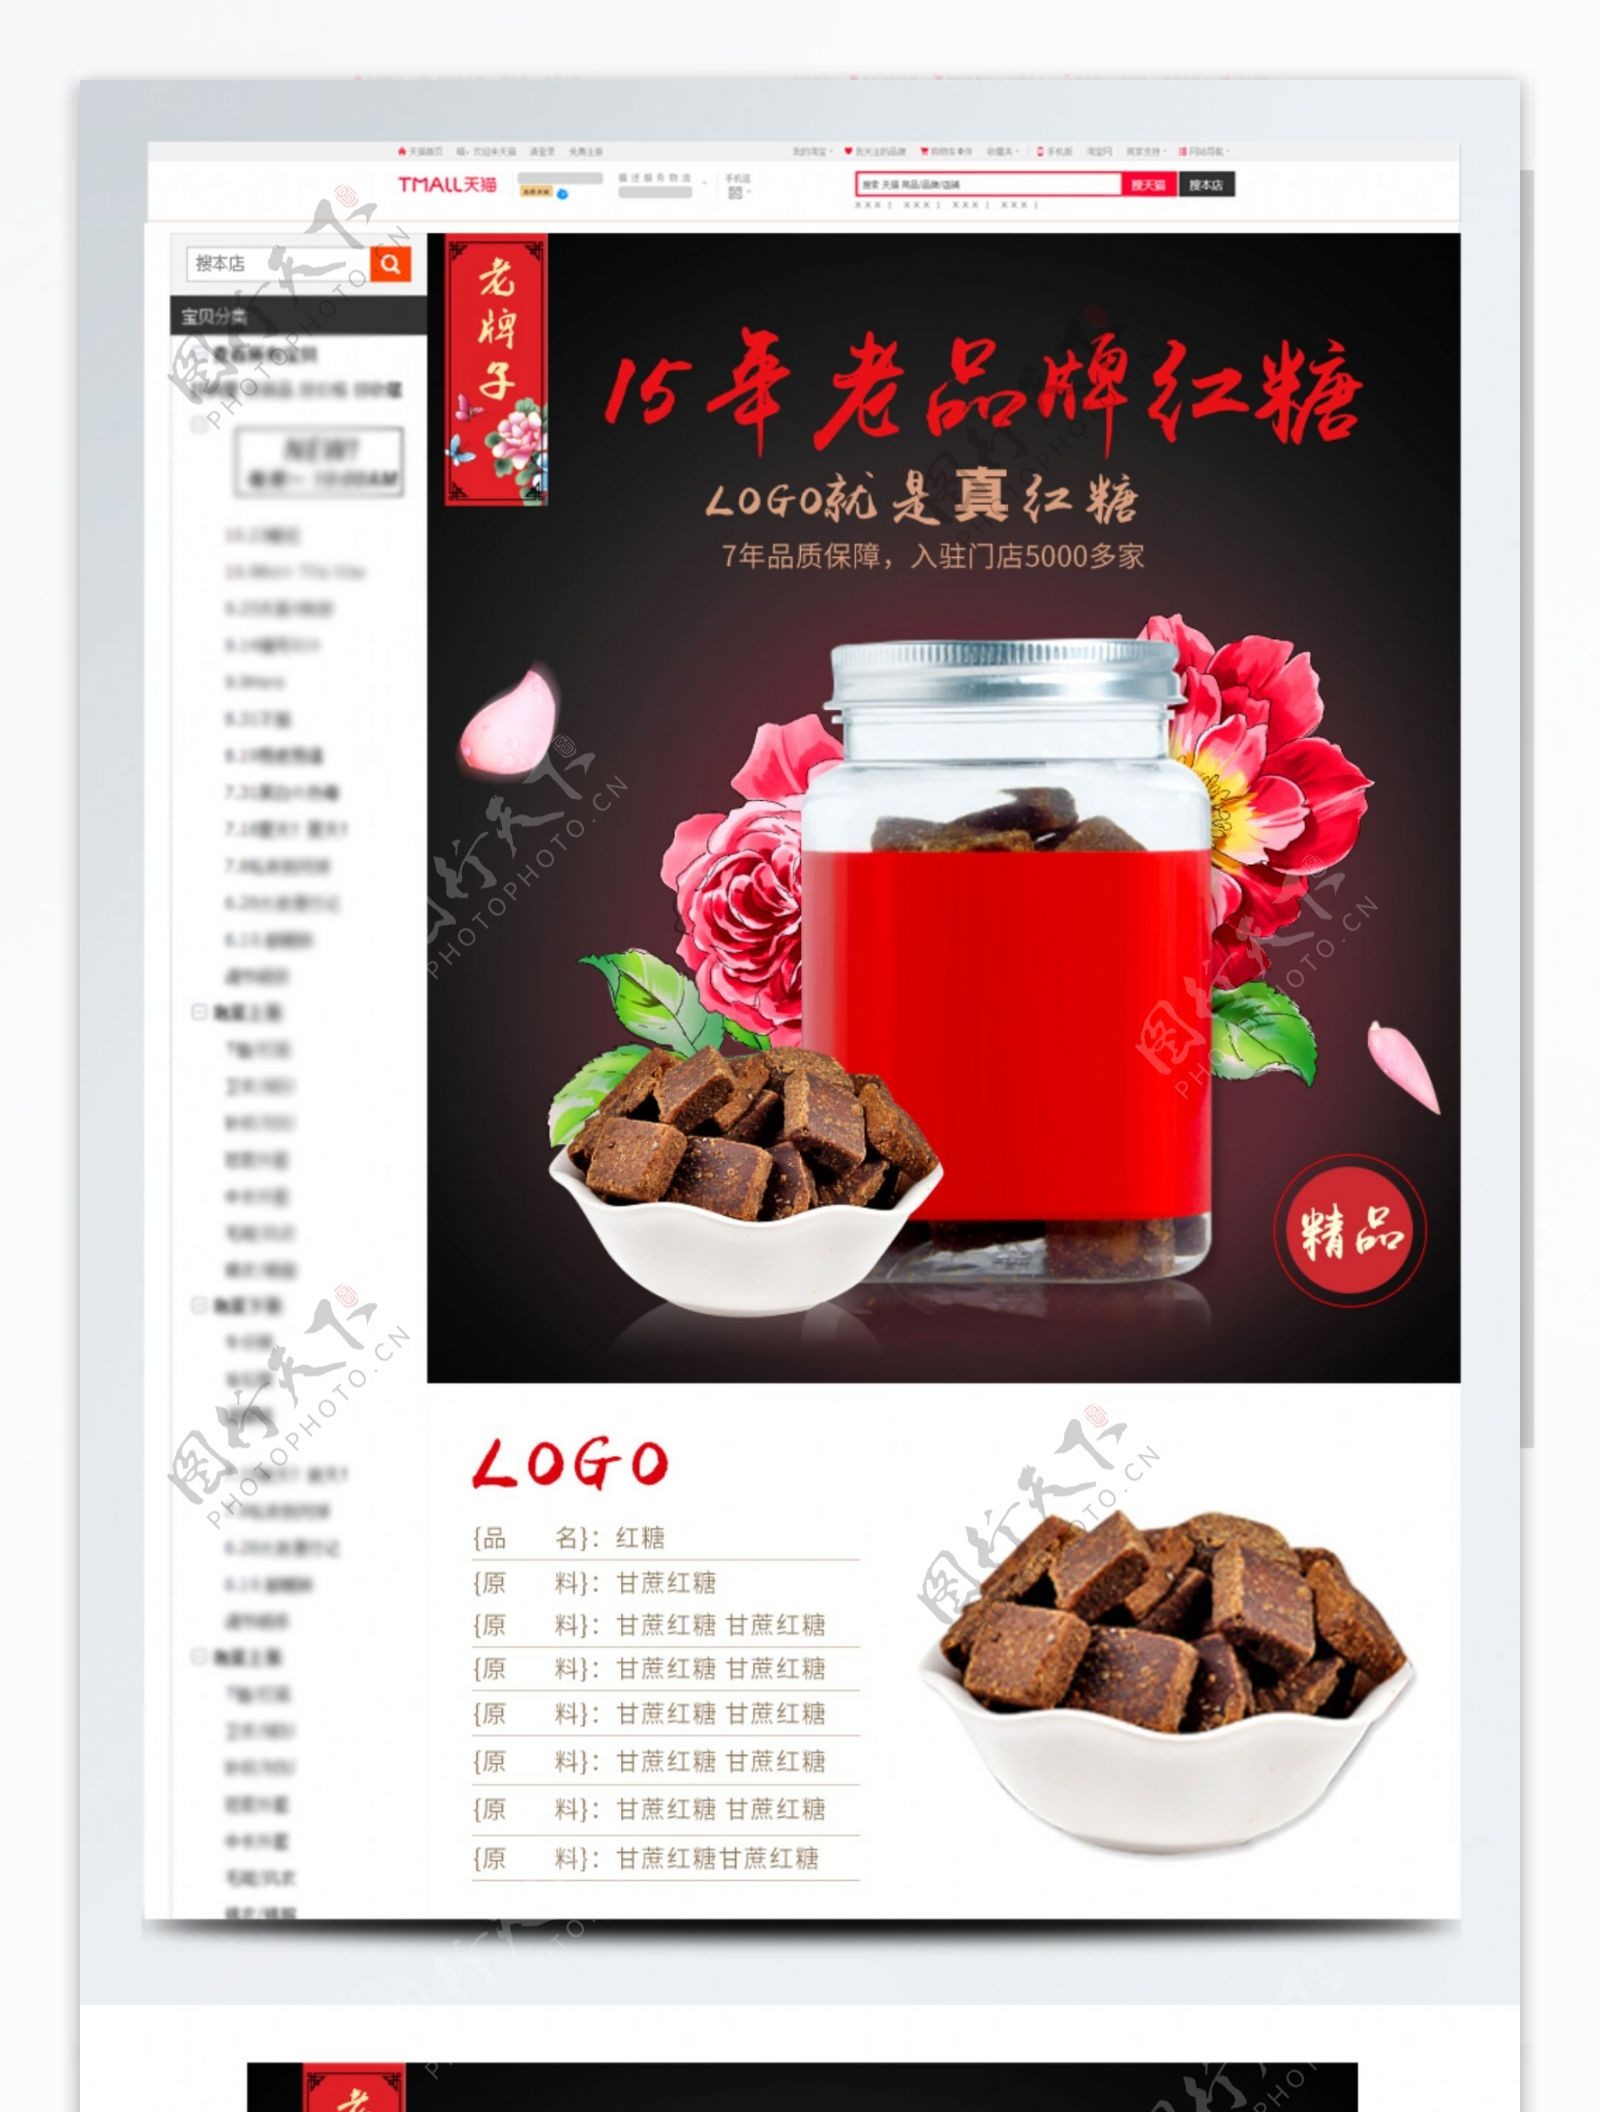 中国风食品红糖黑糖详情页模板psd